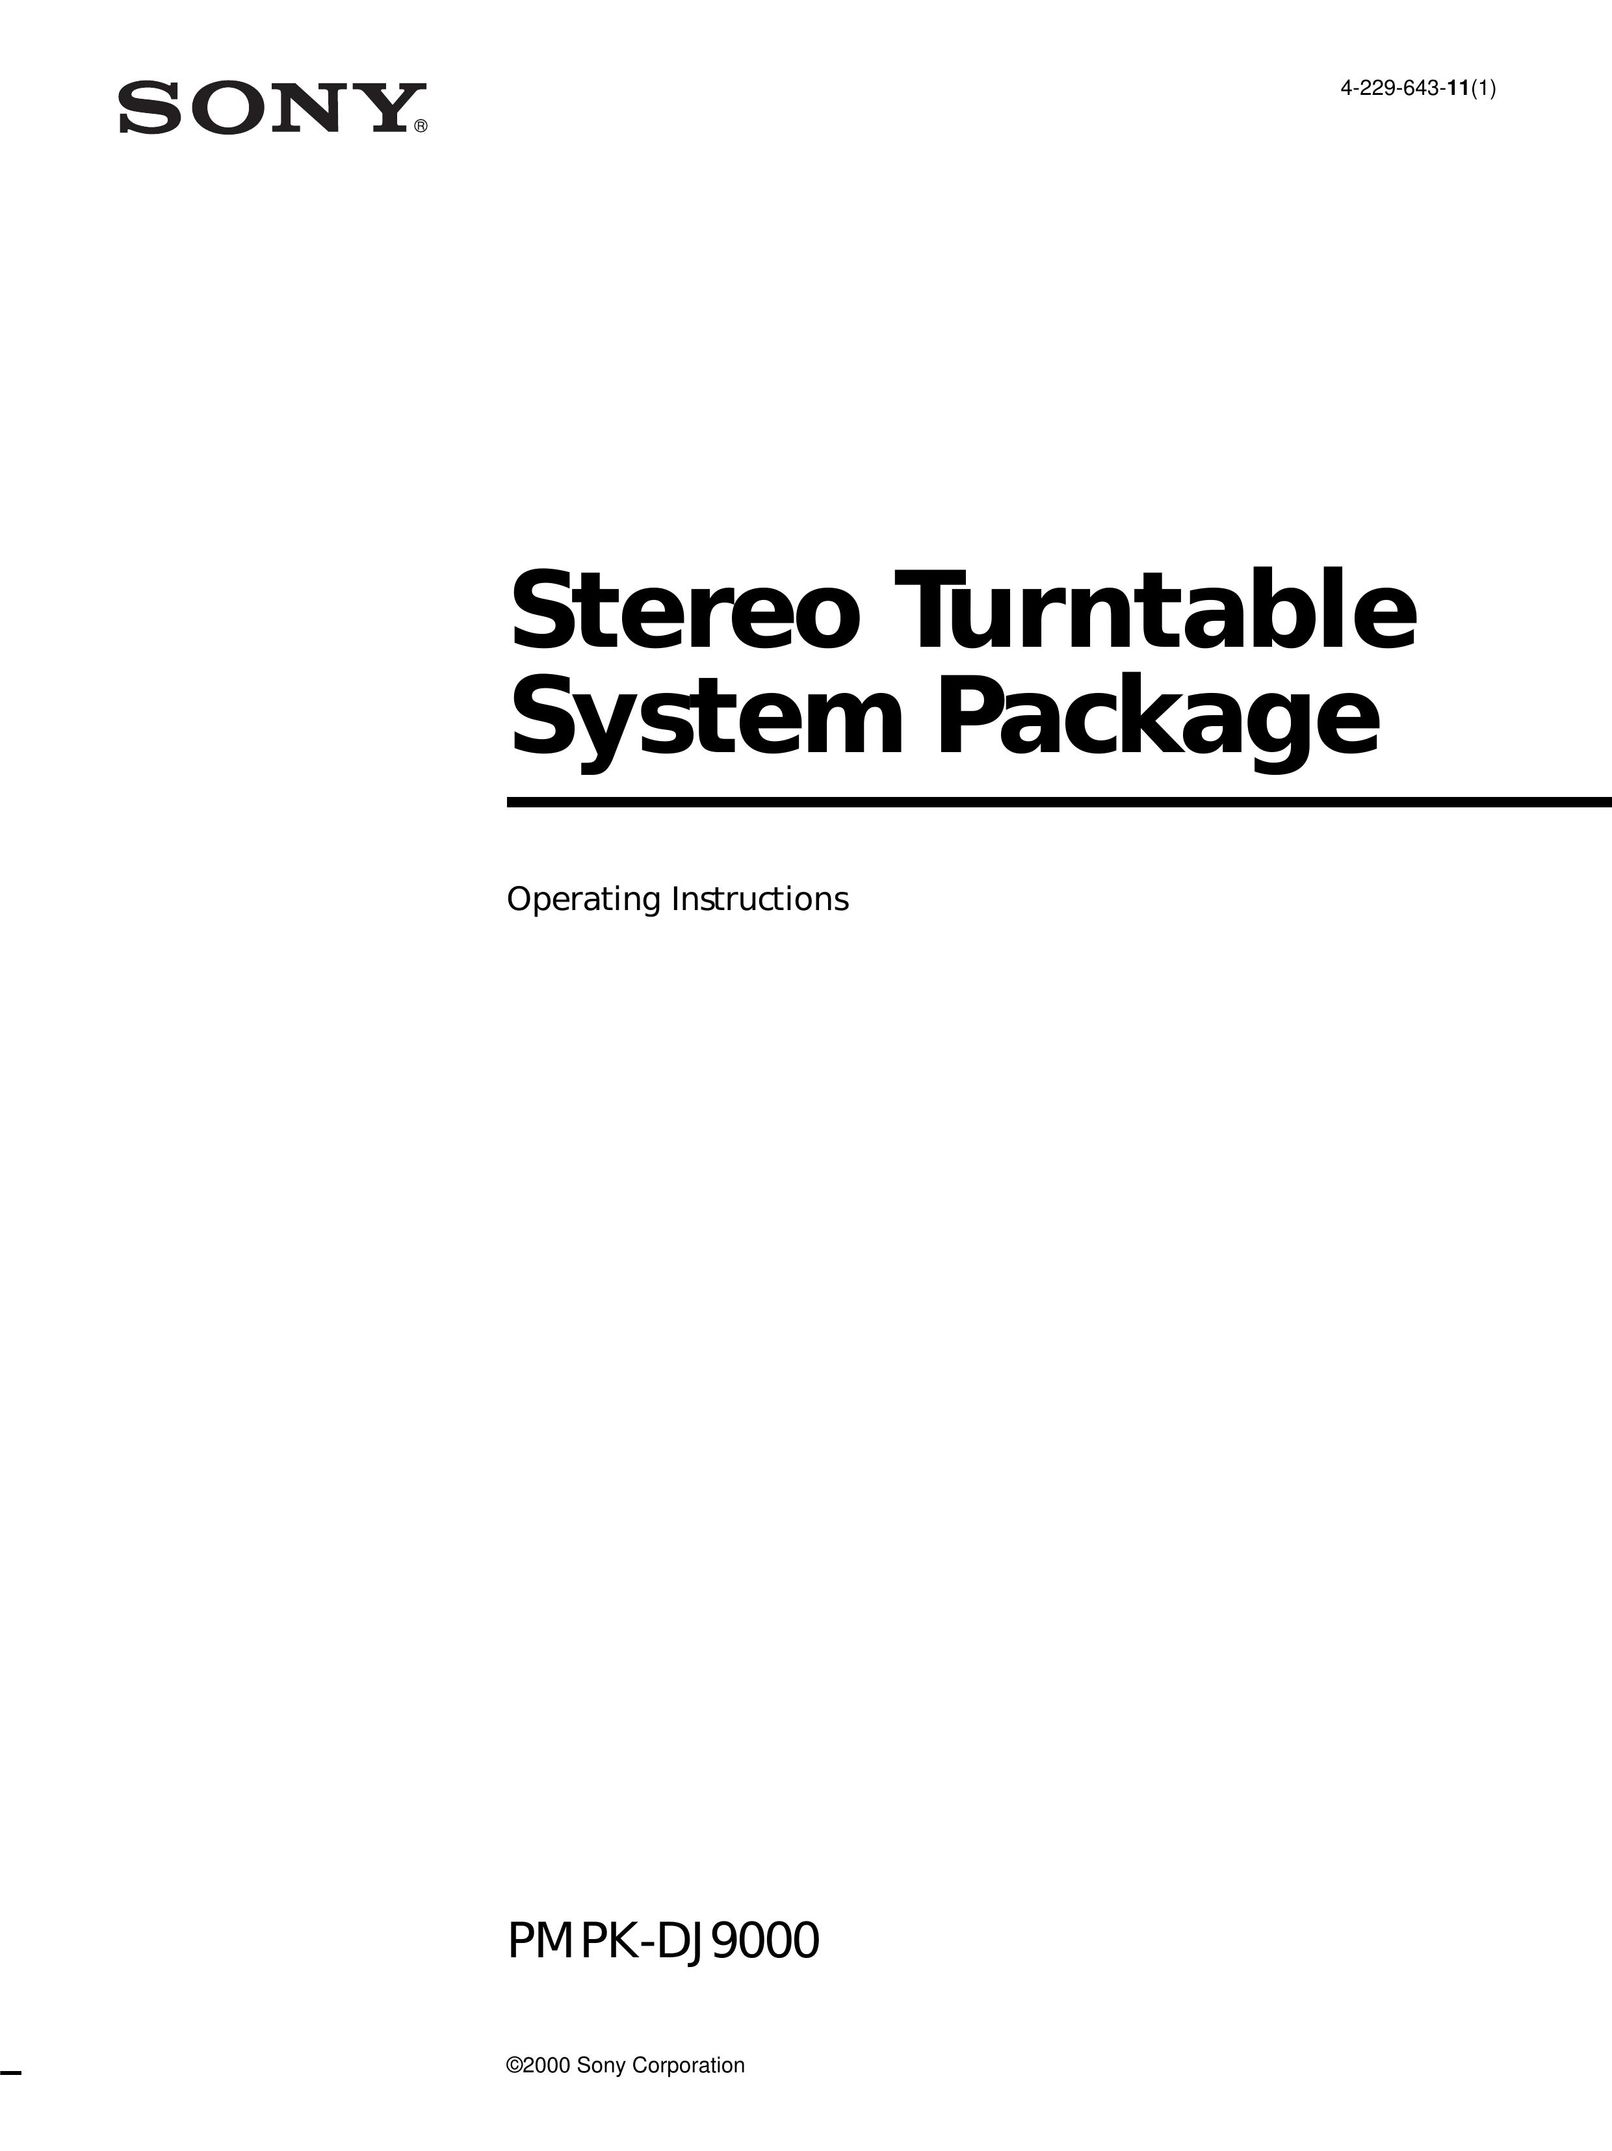 Sony PMPK-DJ9000 Turntable User Manual